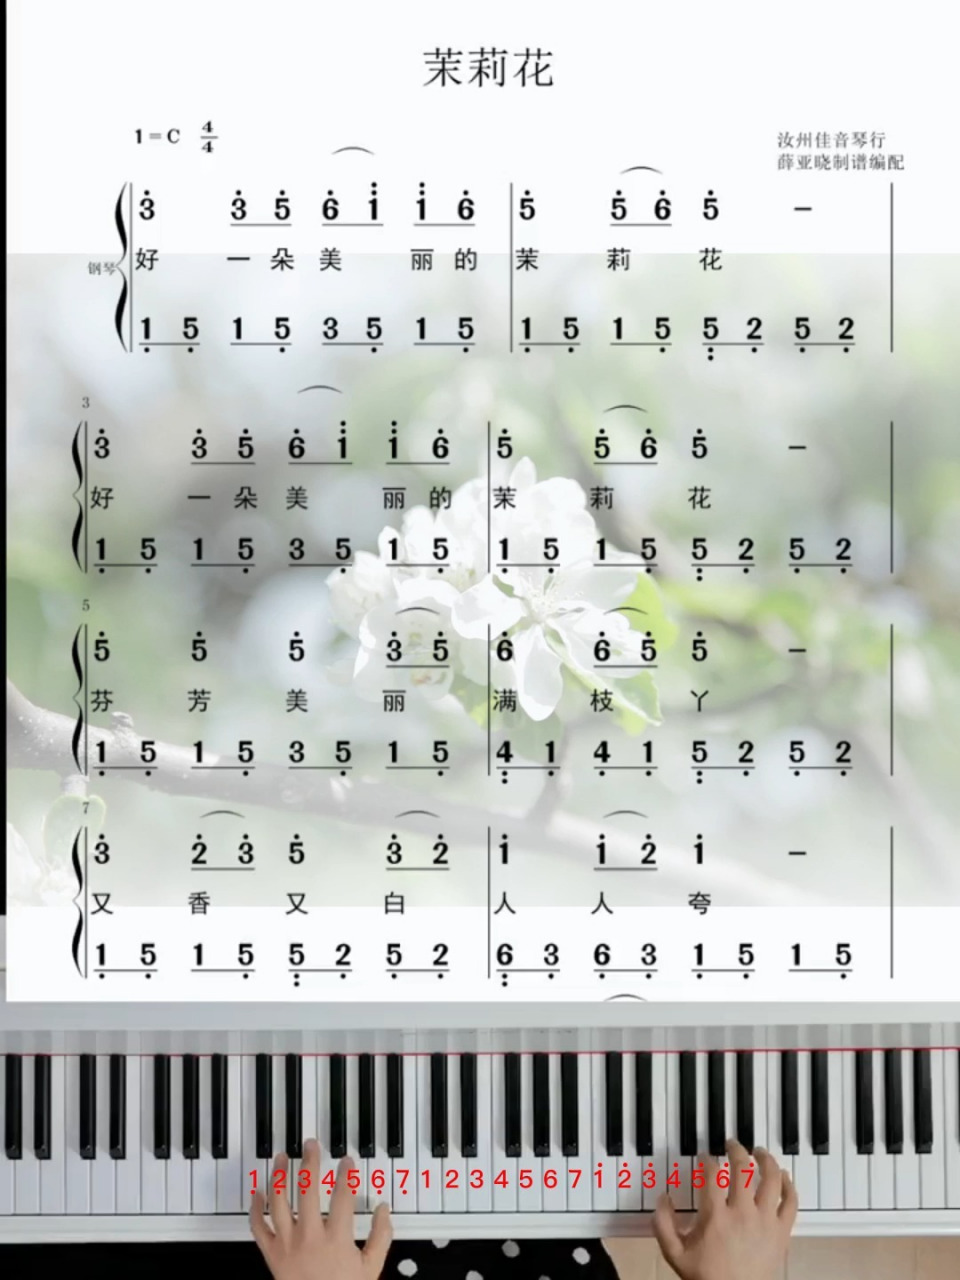 0202电子琴教学 民歌经典《茉莉花》最清晰的简谱教会你弹奏哦!